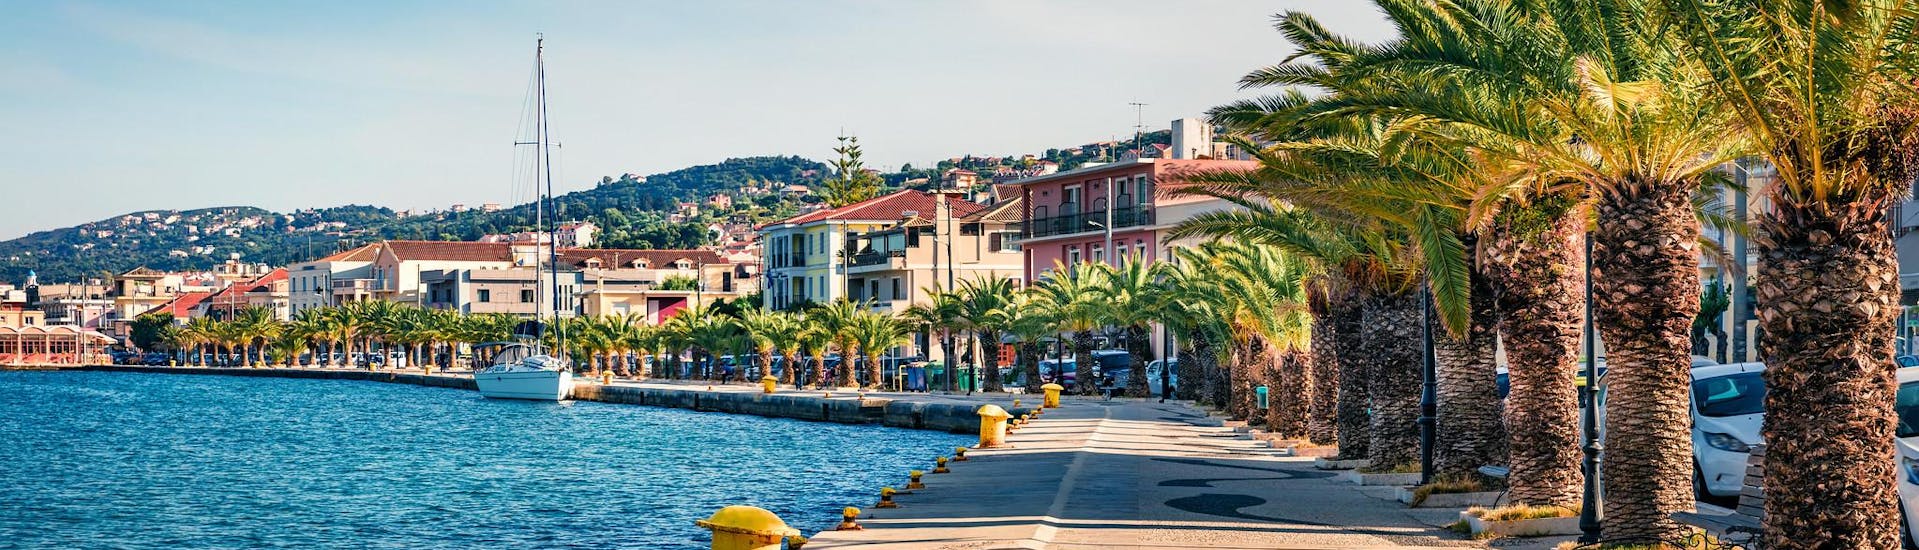 Vista del puerto de Argostoli, hermoso punto de partida de paseos en barco en la isla de Cefalonia, Grecia.